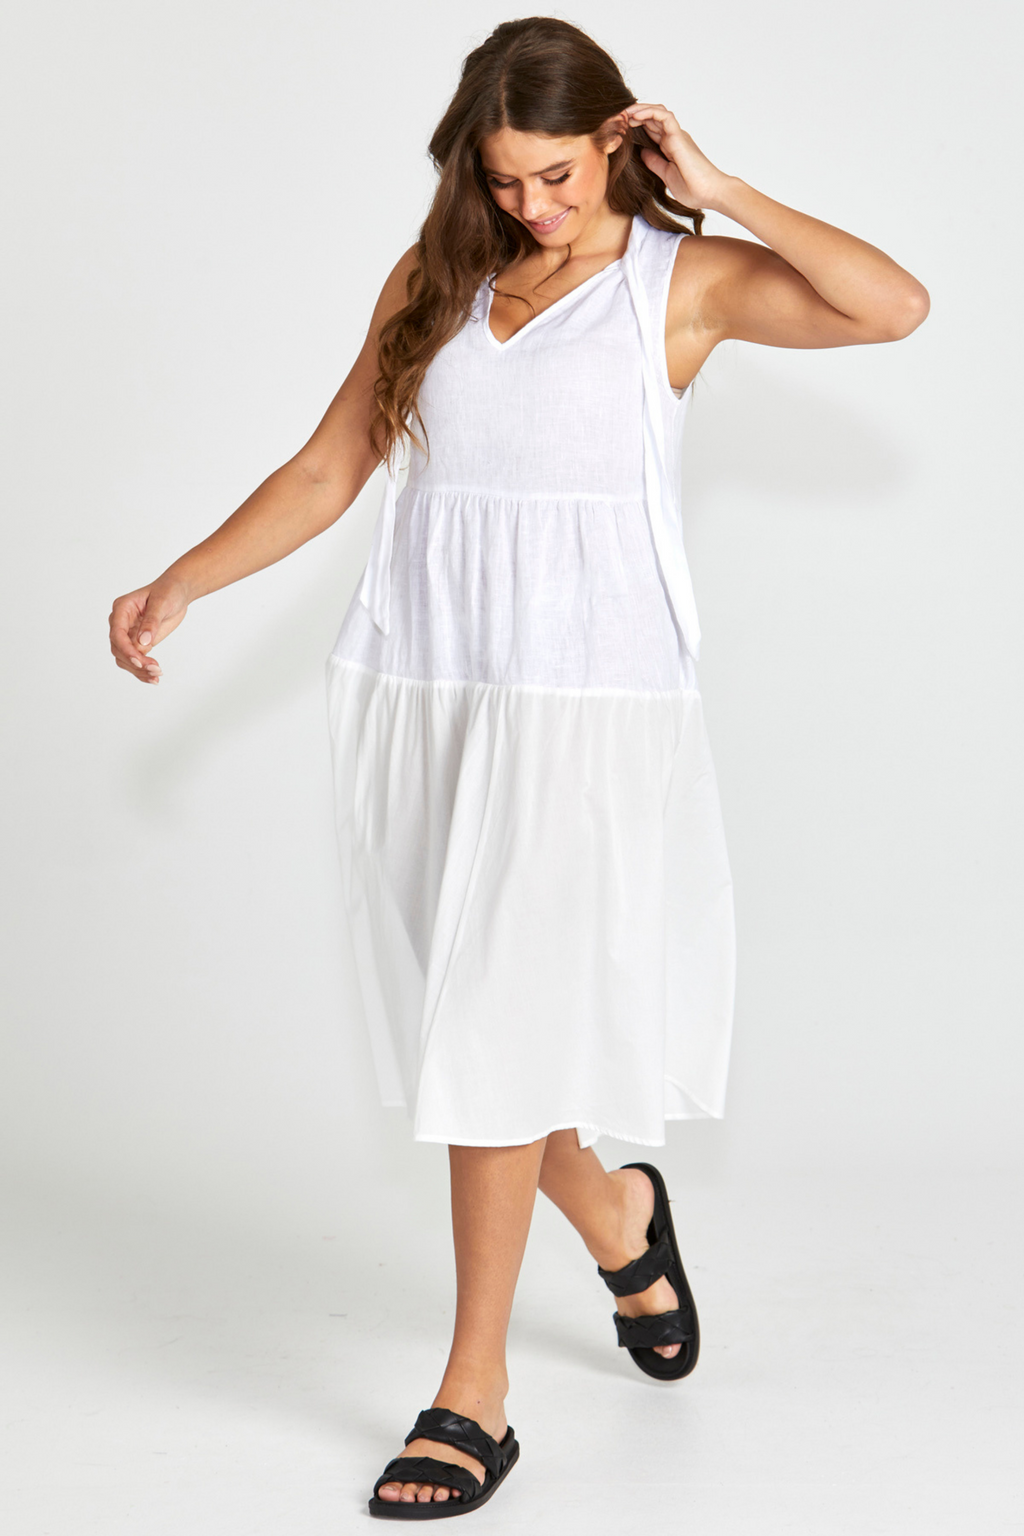 SAVANNAH DRESS - White